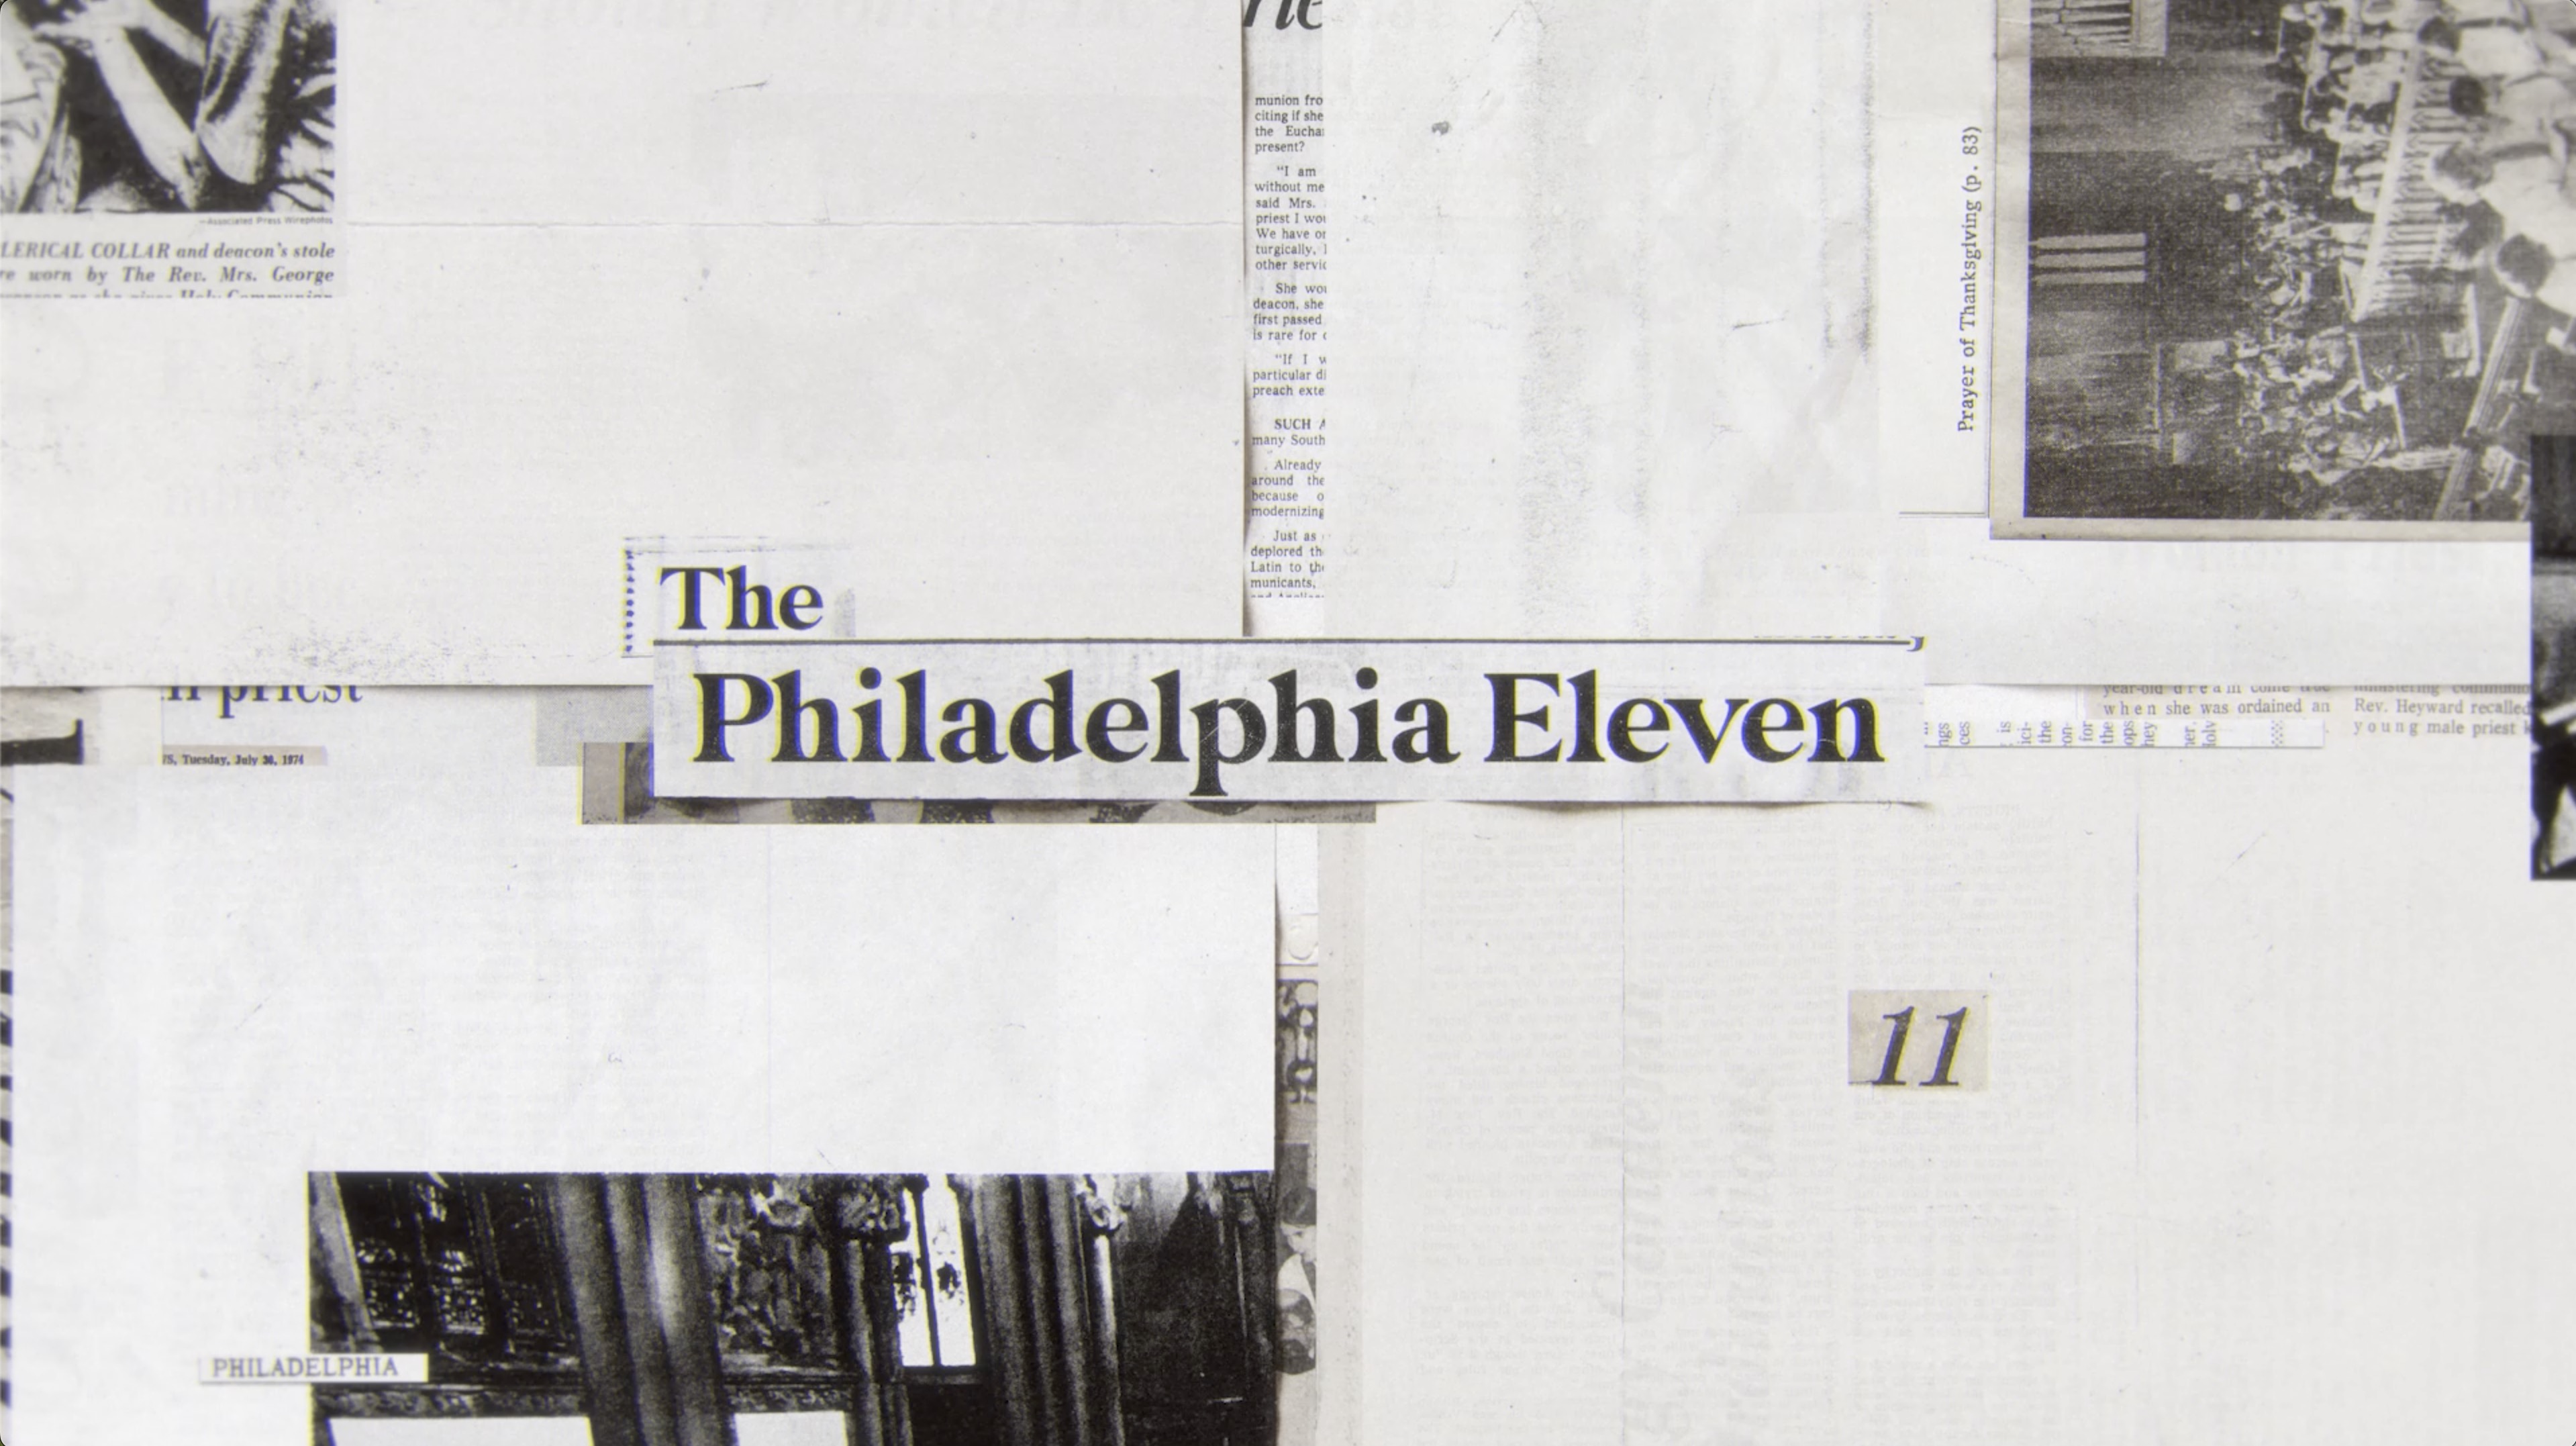 The Philadelphia Eleven news headline